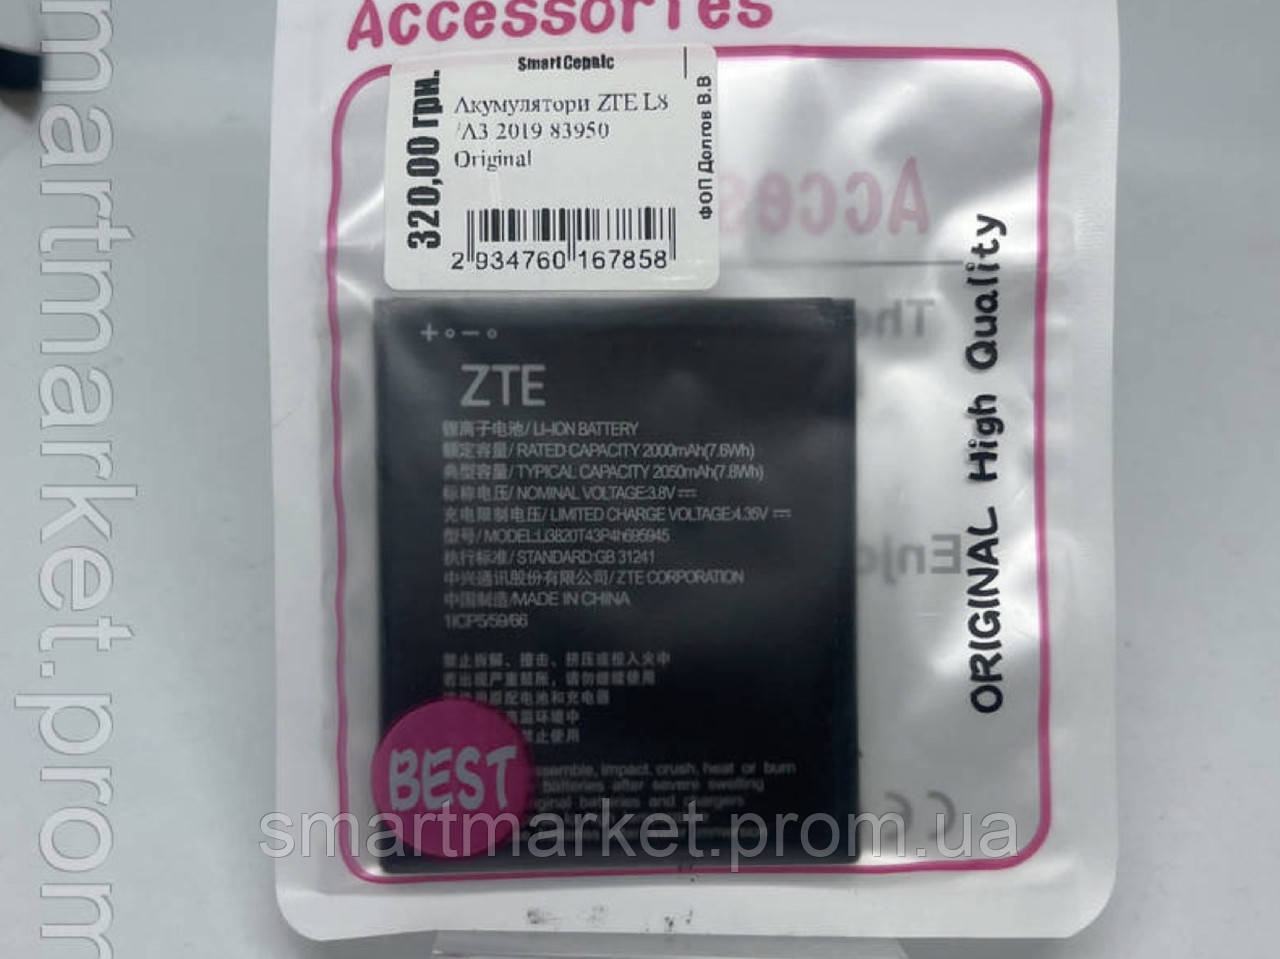 Акумулятори ZTE L8 /A3 2019 83950 Original